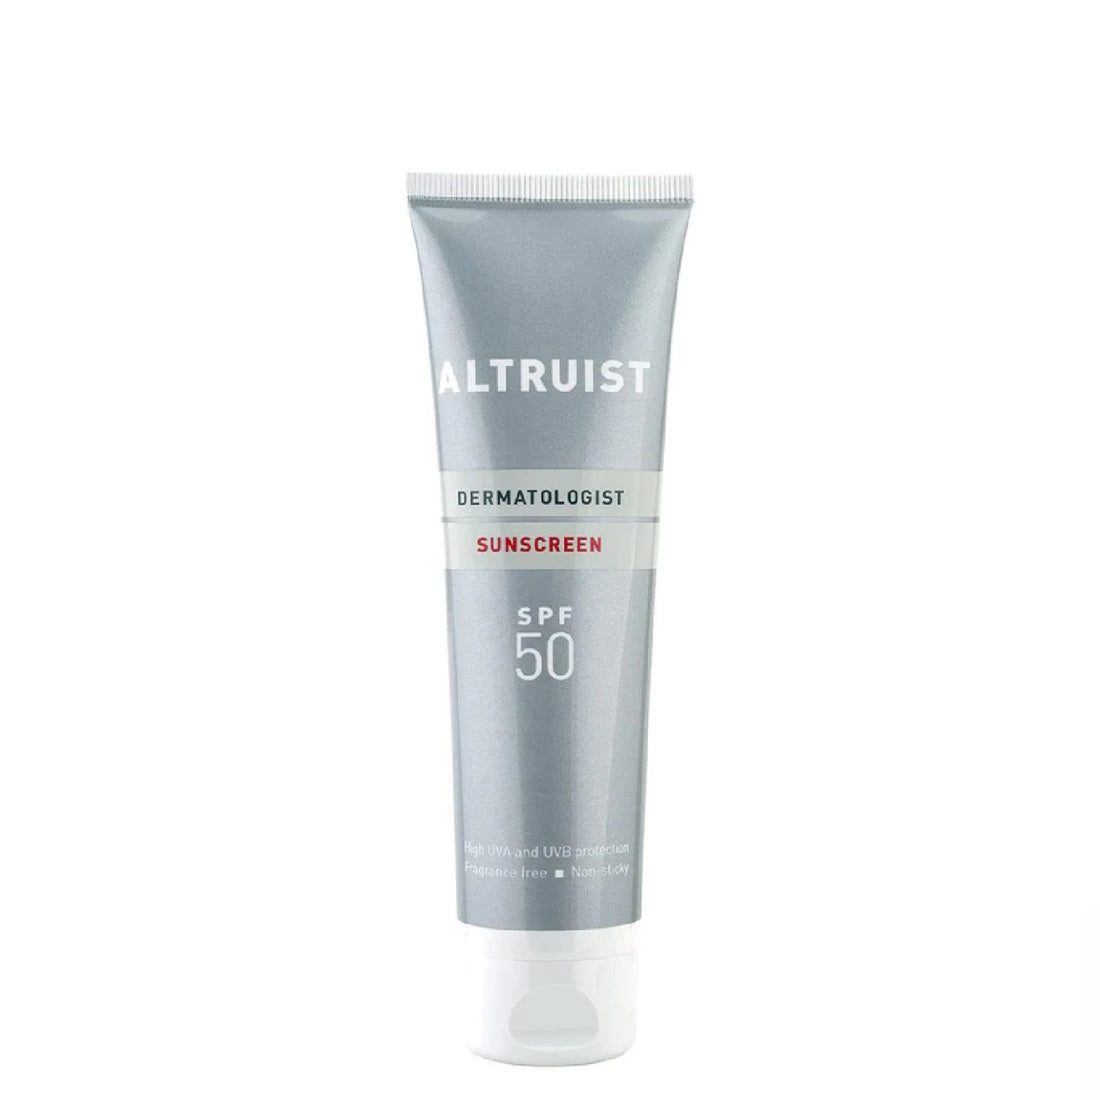 Altruist Sunscreen Spf 50 100 ml